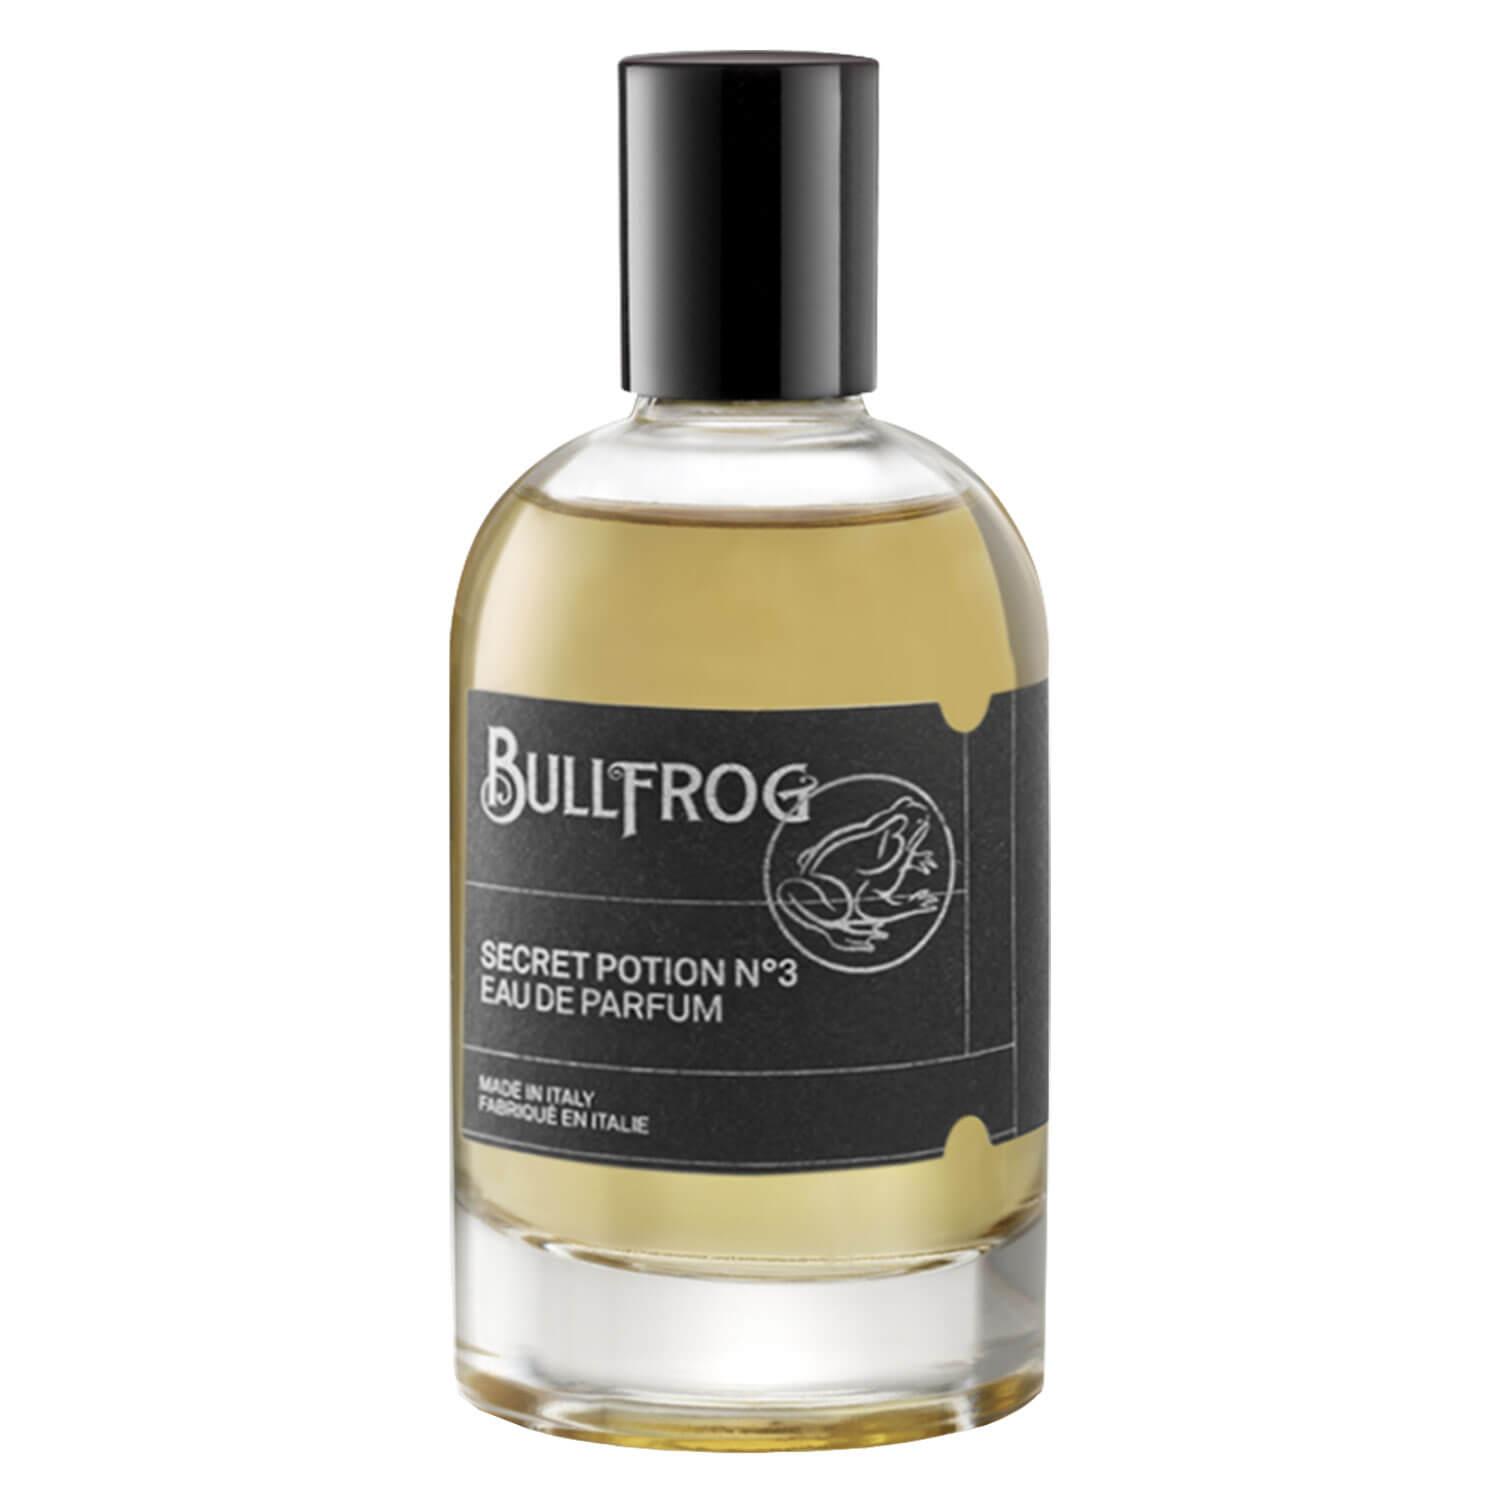 BULLFROG - Eau de Parfum Secret Potion N°3